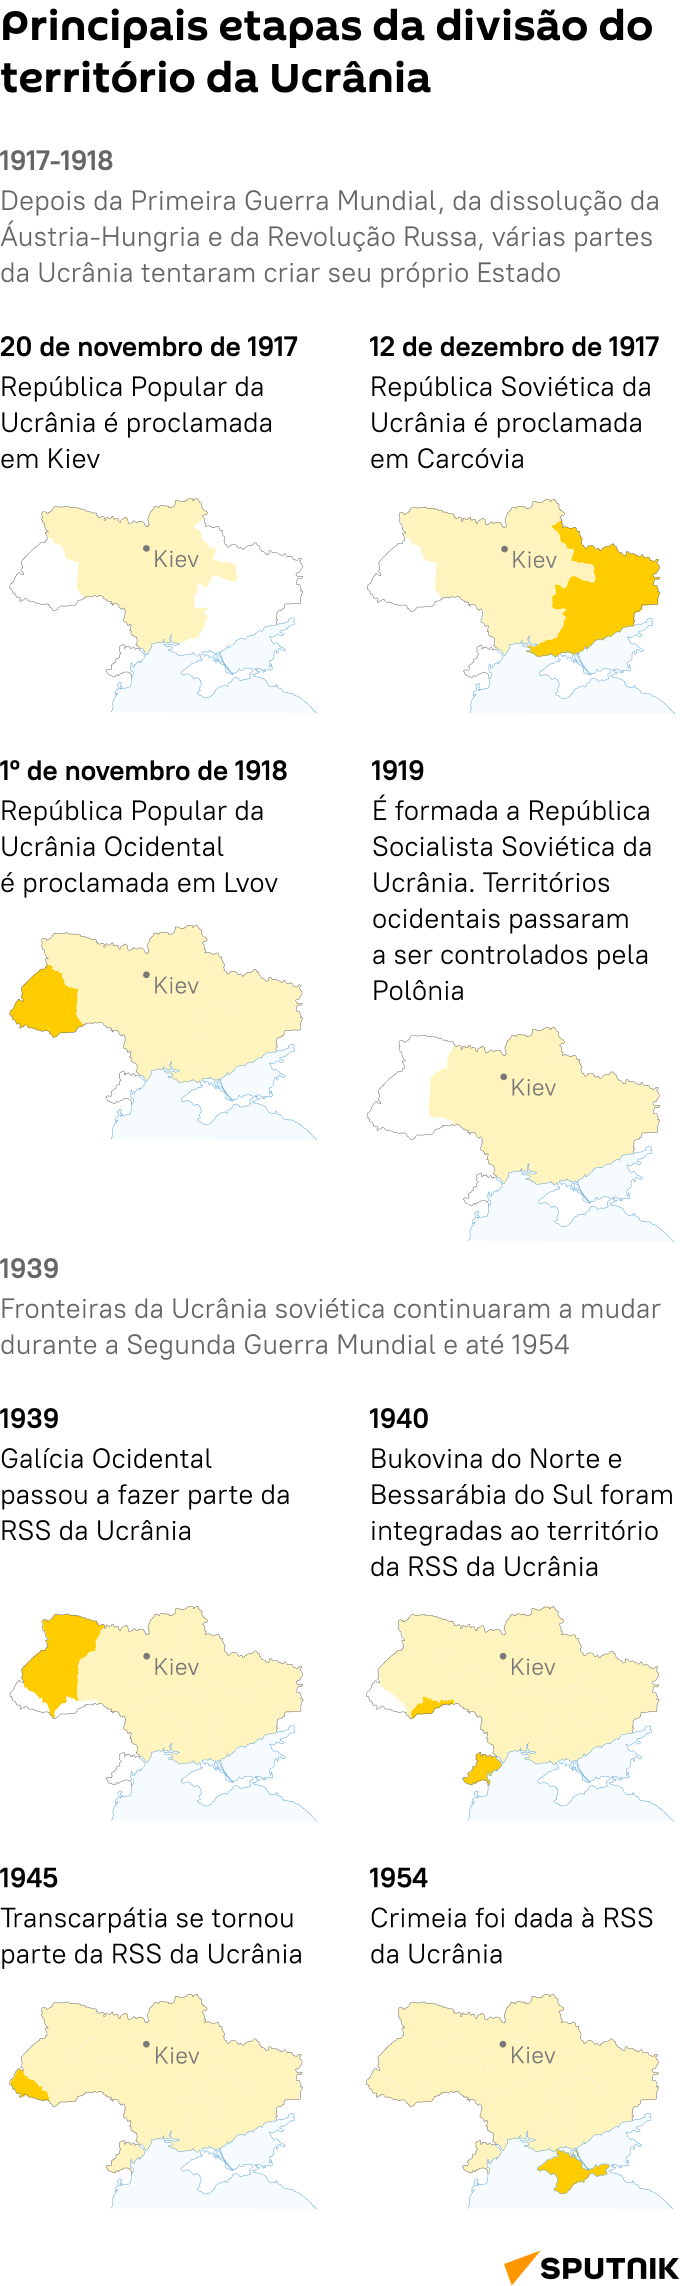 Principais etapas da divisão territorial na Ucrânia - Sputnik Brasil